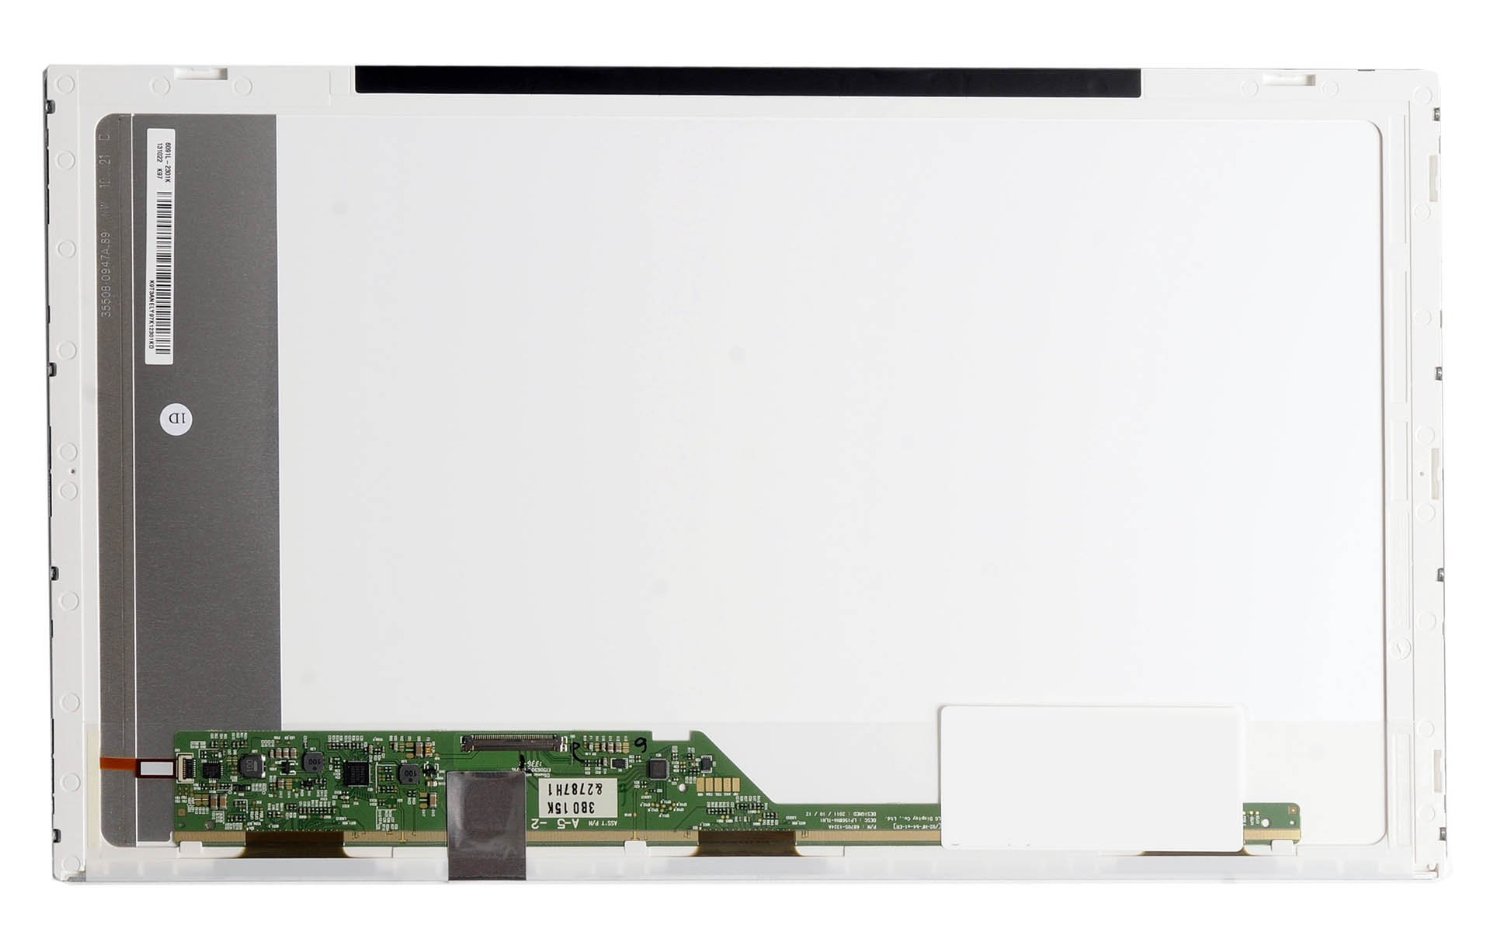 ASUS PANTALLA LED LCD PARA LA´TOP X55, X55C, X55C-SX028H, X55A DE 15.6",CON TERMINADO GLOSSY Y RESOLUCIÓN HD WXGA 1366 x 768